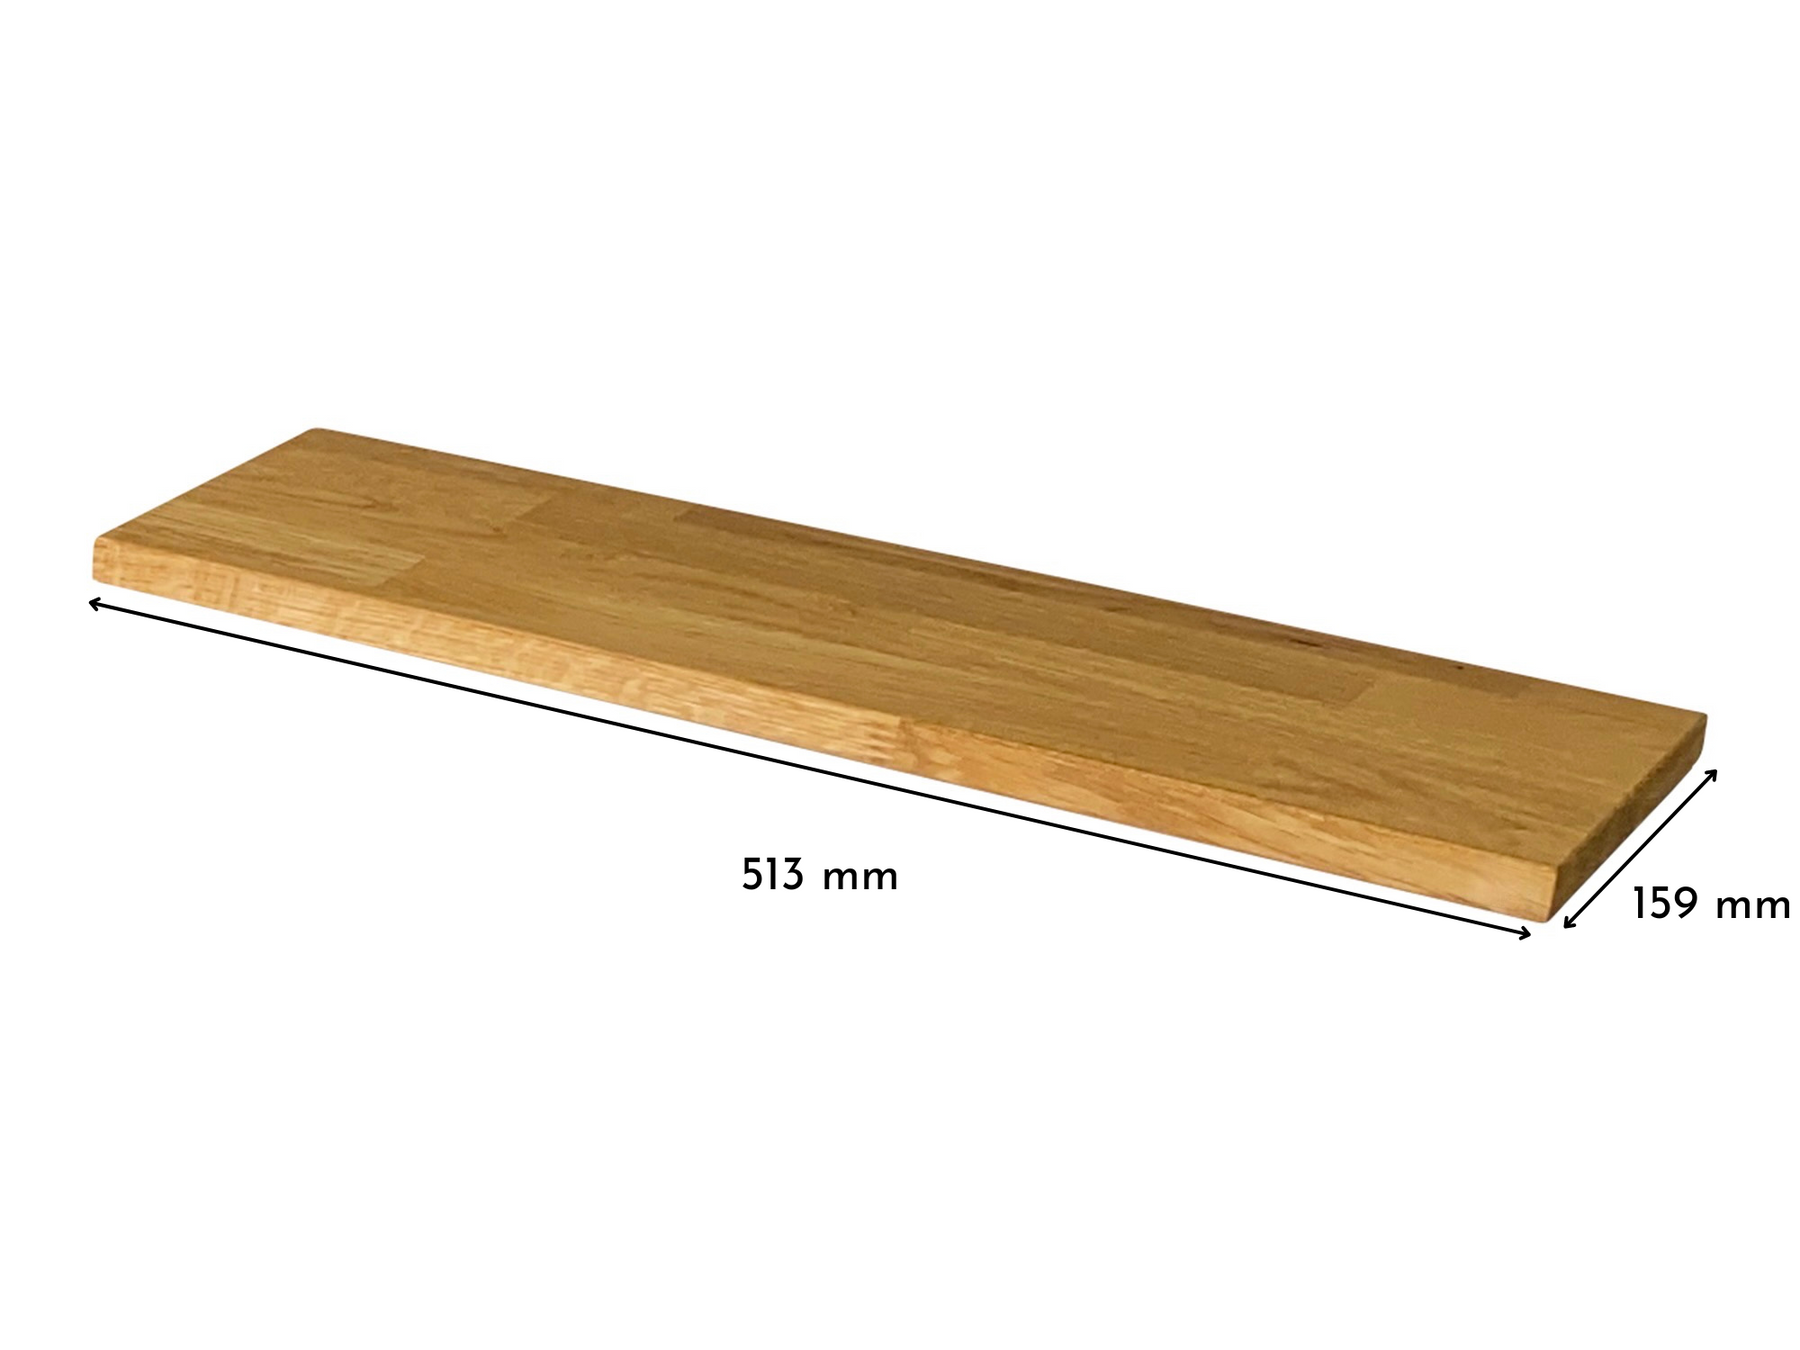 Deckplatte in Eiche Natur für Ikea Trones Schuhschrank 1 Fach breit 